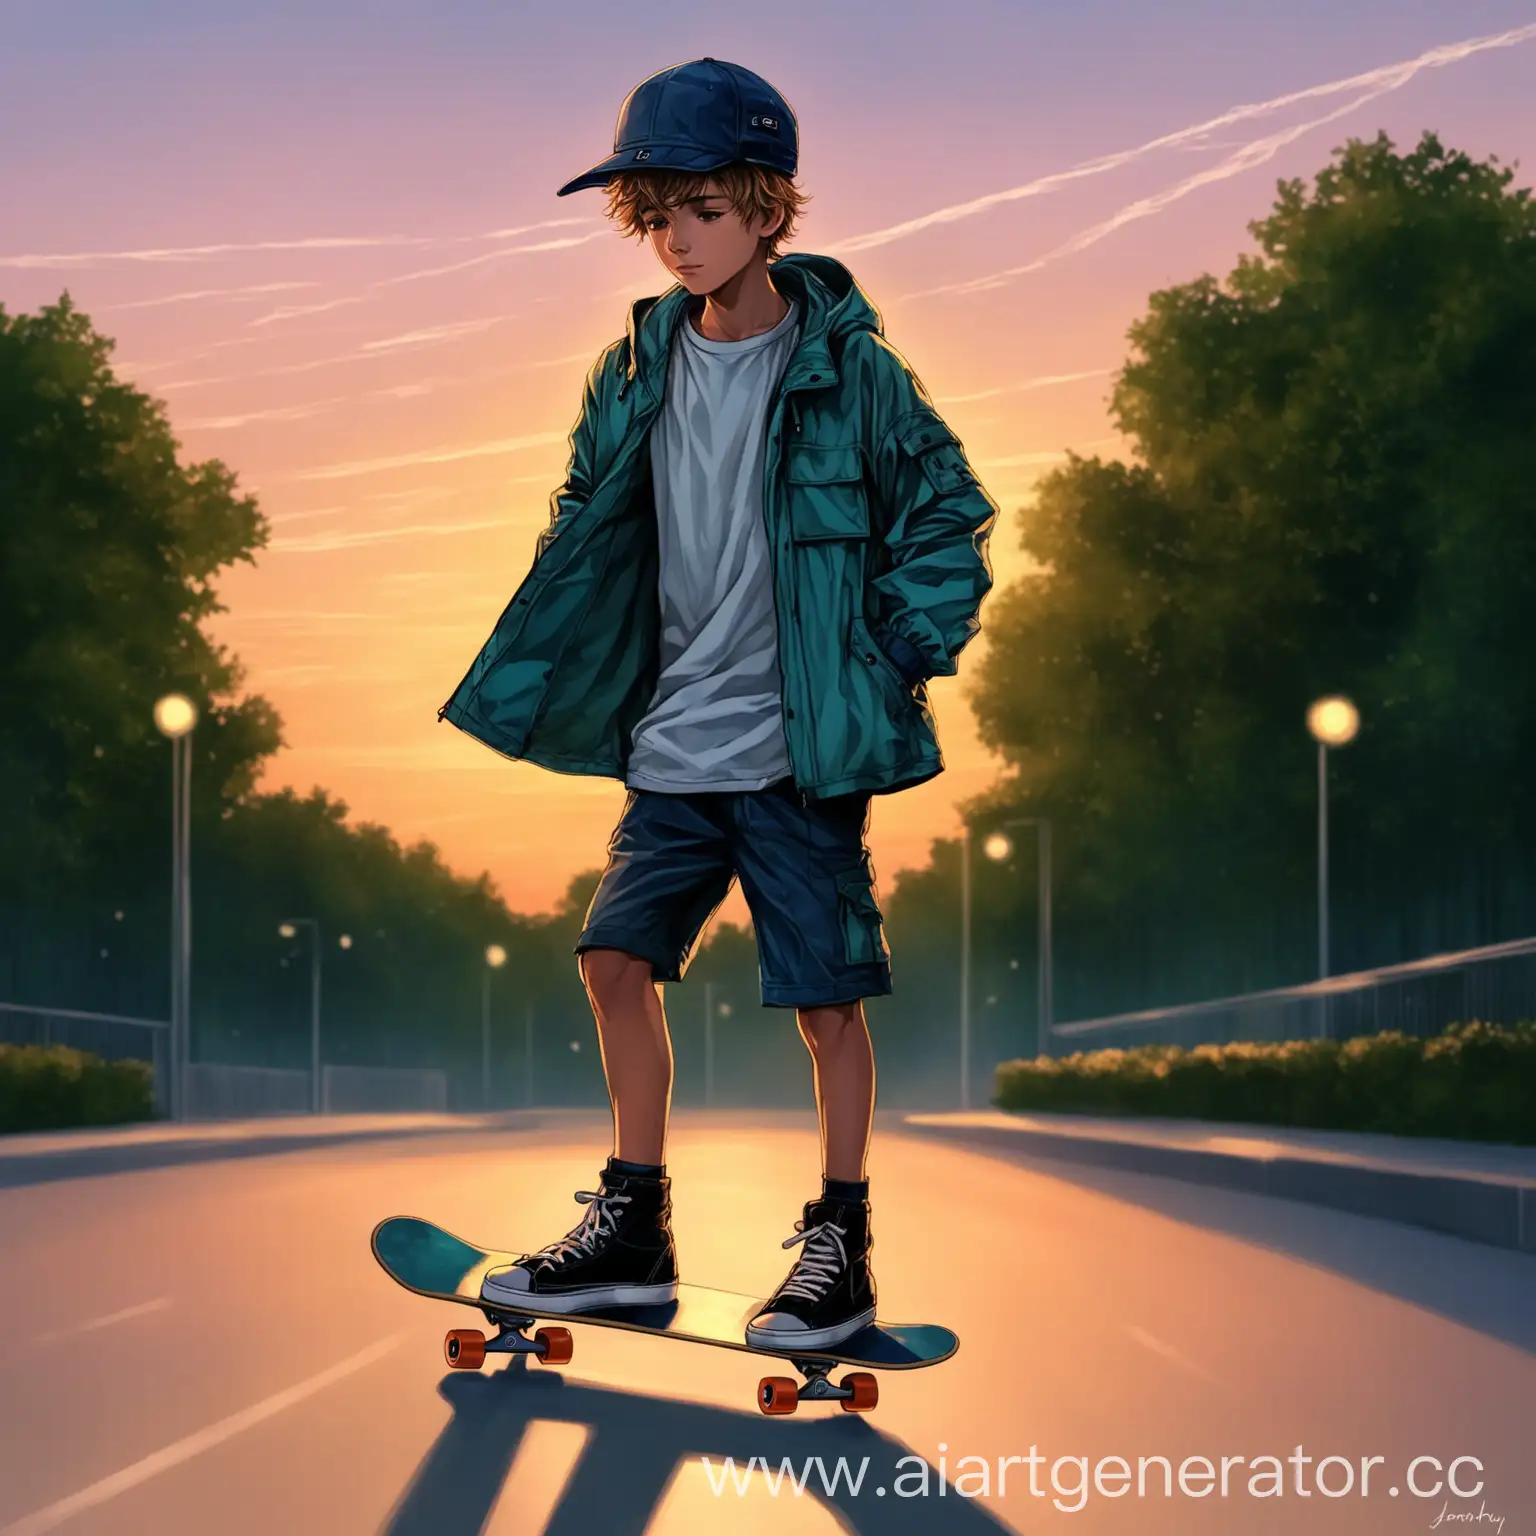 скейтер, мальчик – летний ветер
Порванная кепка, куртка-анорак
Хей, скейтер, мальчик – летний вечер